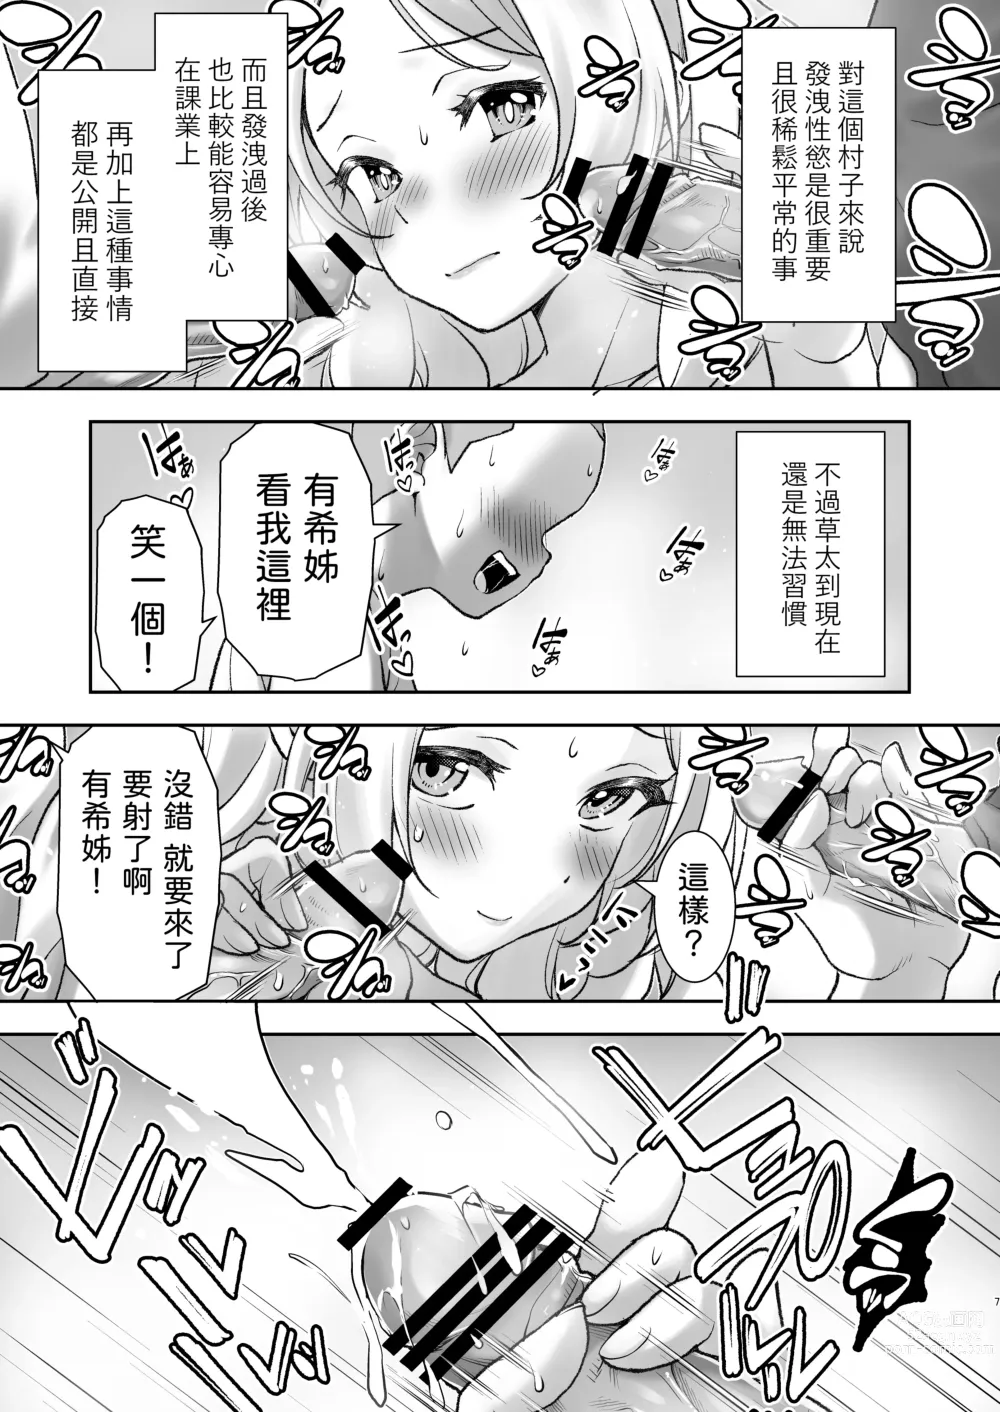 Page 7 of doujinshi Mura ni wa Juku ga Nai no de Watashi ga Benkyou wo Oshiete-imasu.